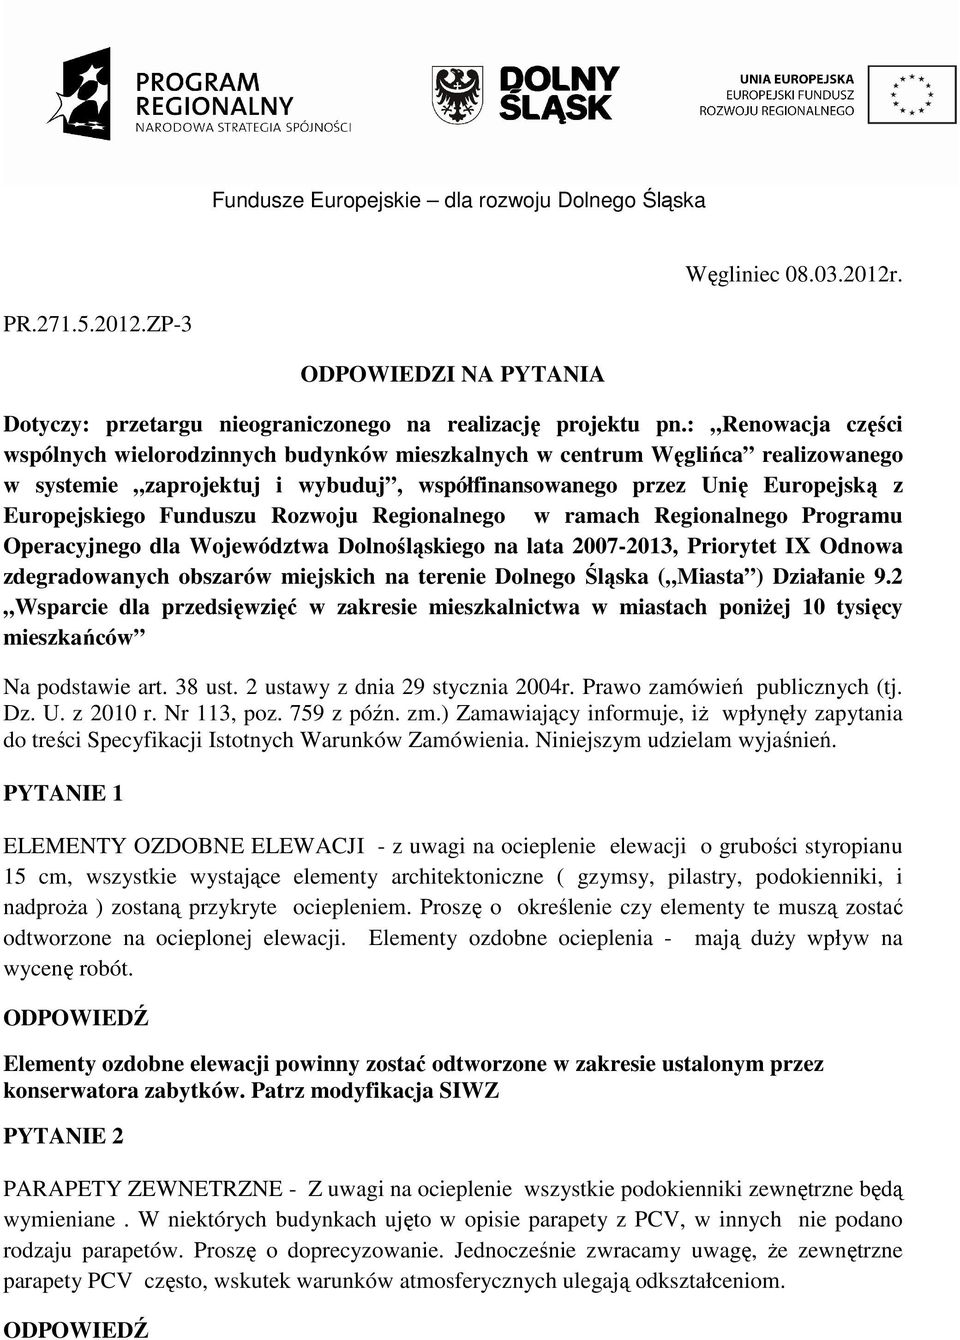 Rozwoju Regionalnego w ramach Regionalnego Programu Operacyjnego dla Województwa Dolnośląskiego na lata 2007-2013, Priorytet IX Odnowa zdegradowanych obszarów miejskich na terenie Dolnego Śląska (